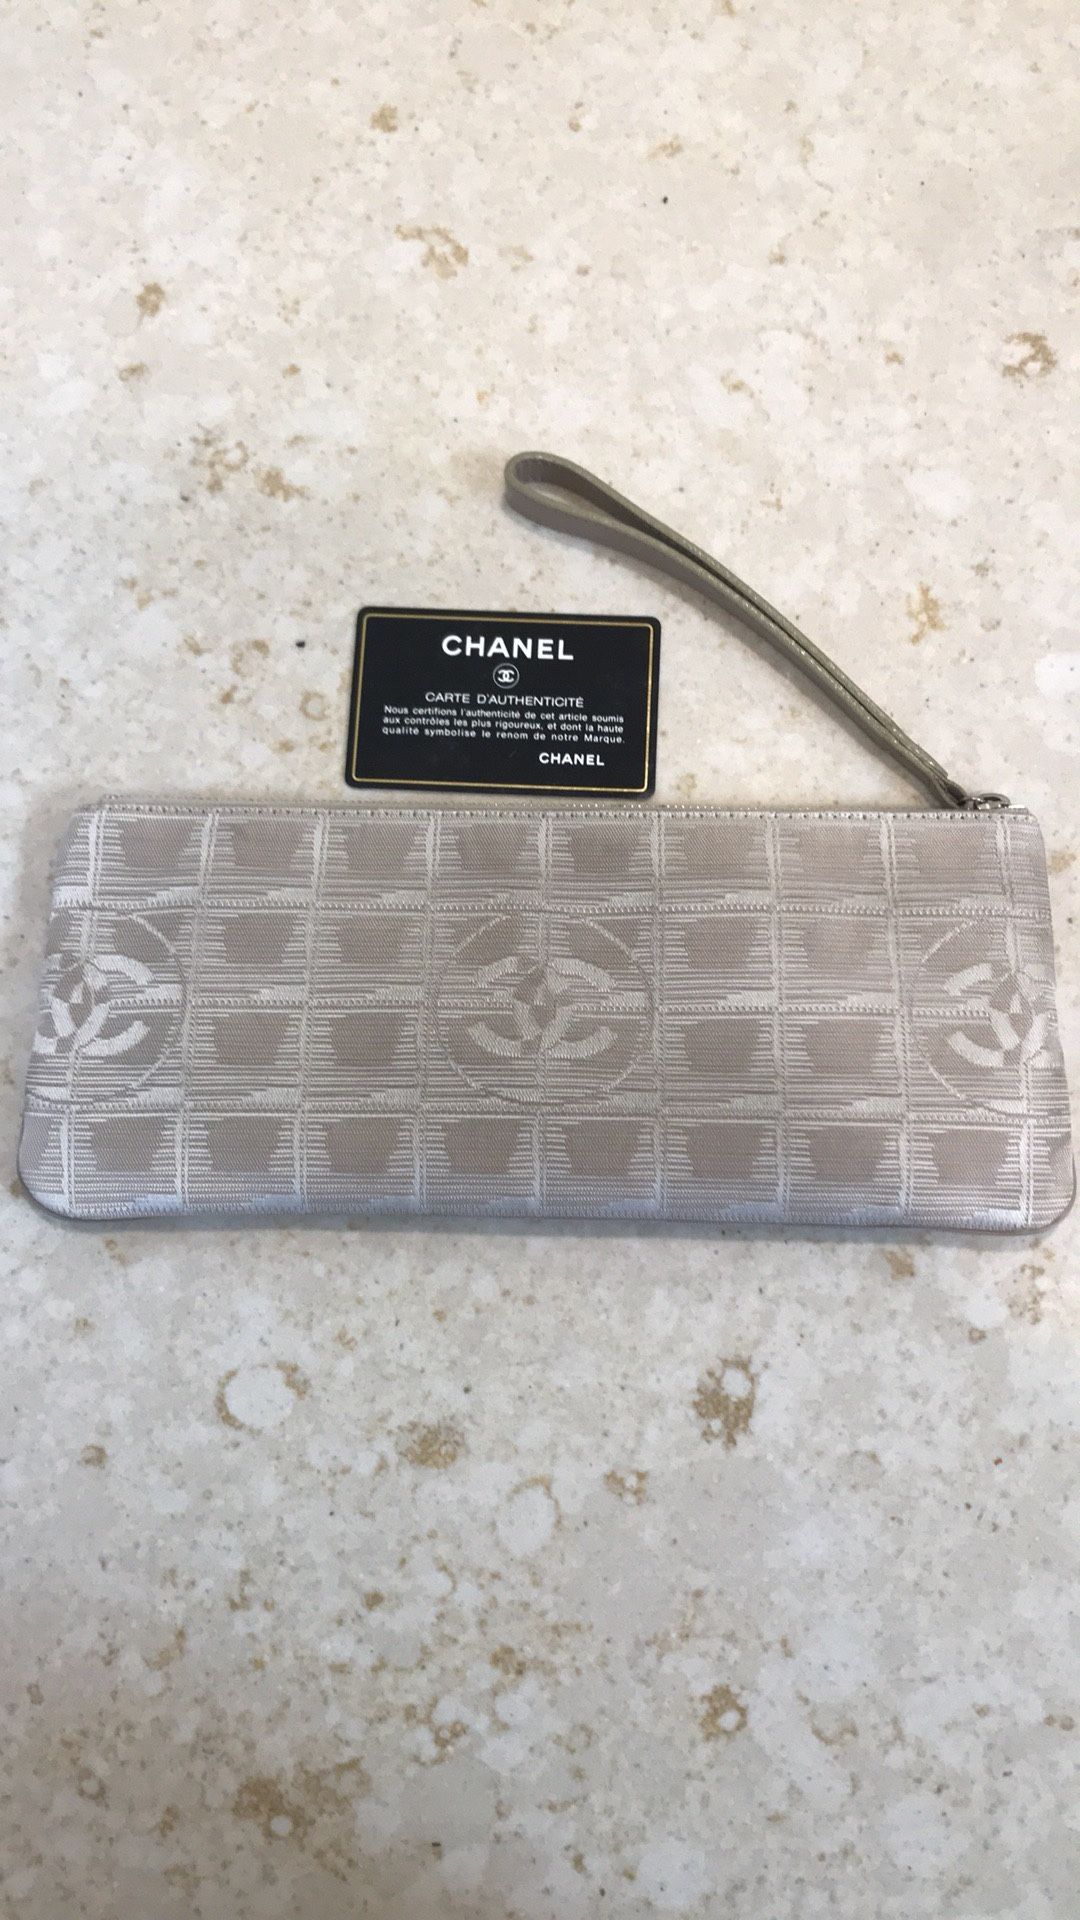 Authentic Chanel clutch/Wristlet